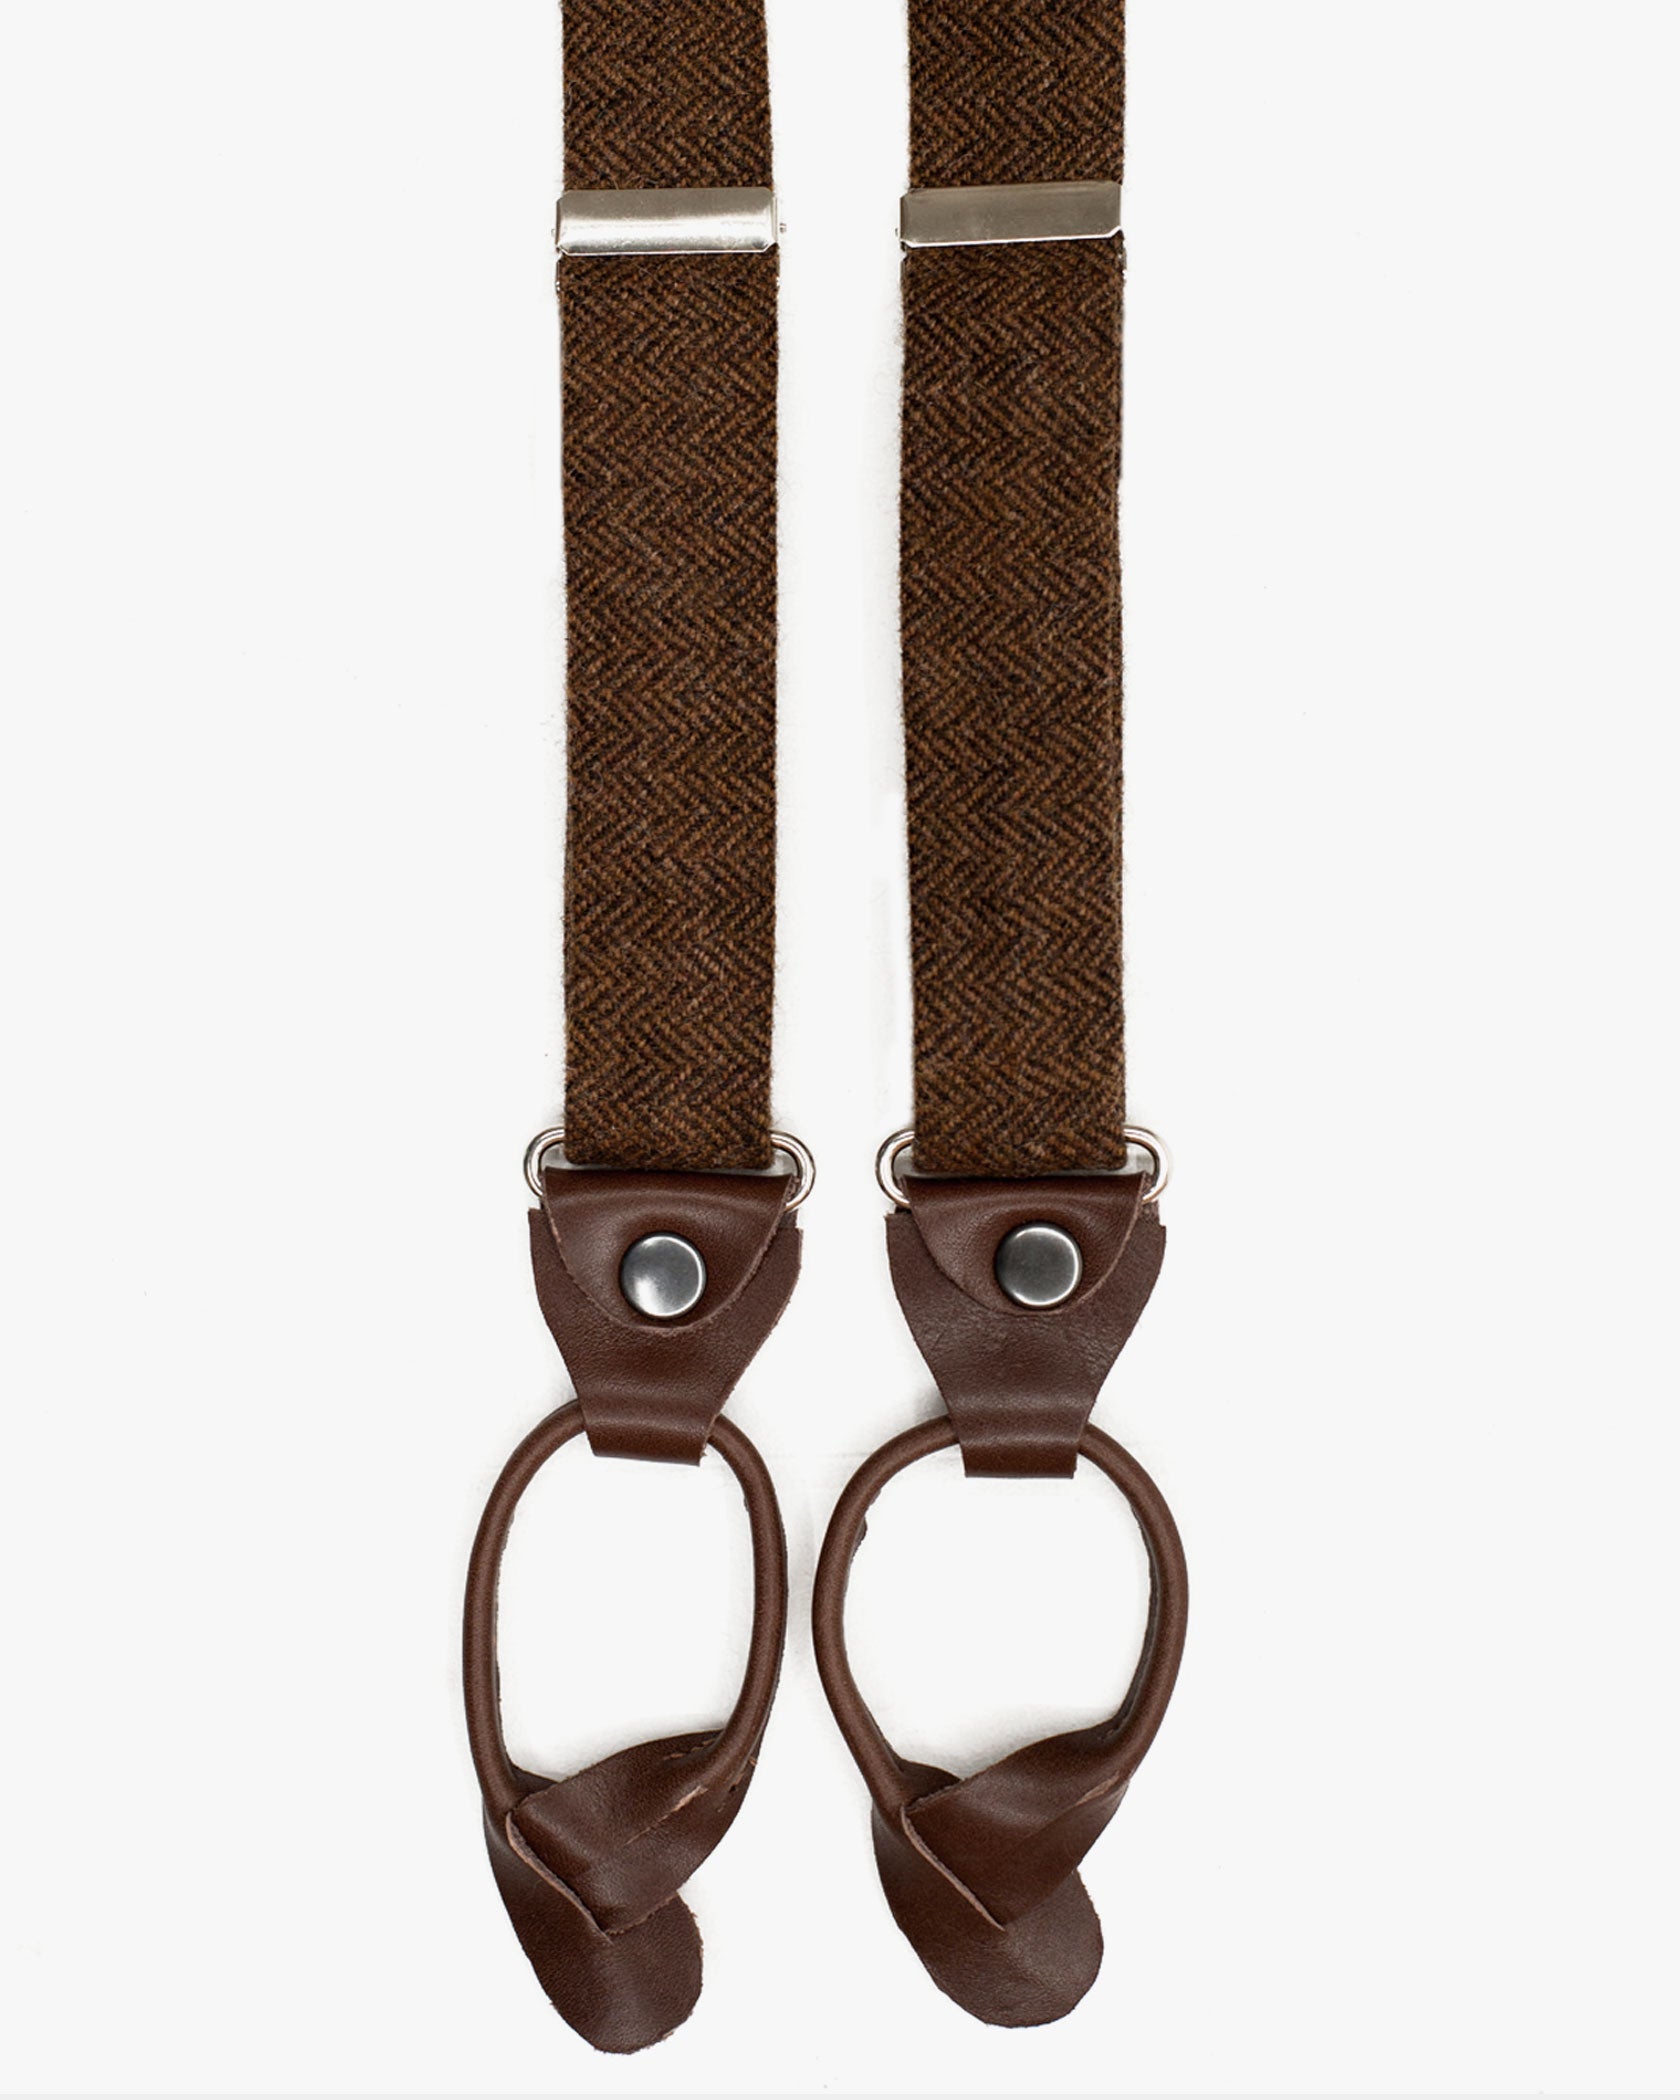 Suspenders - Brown Herringbone